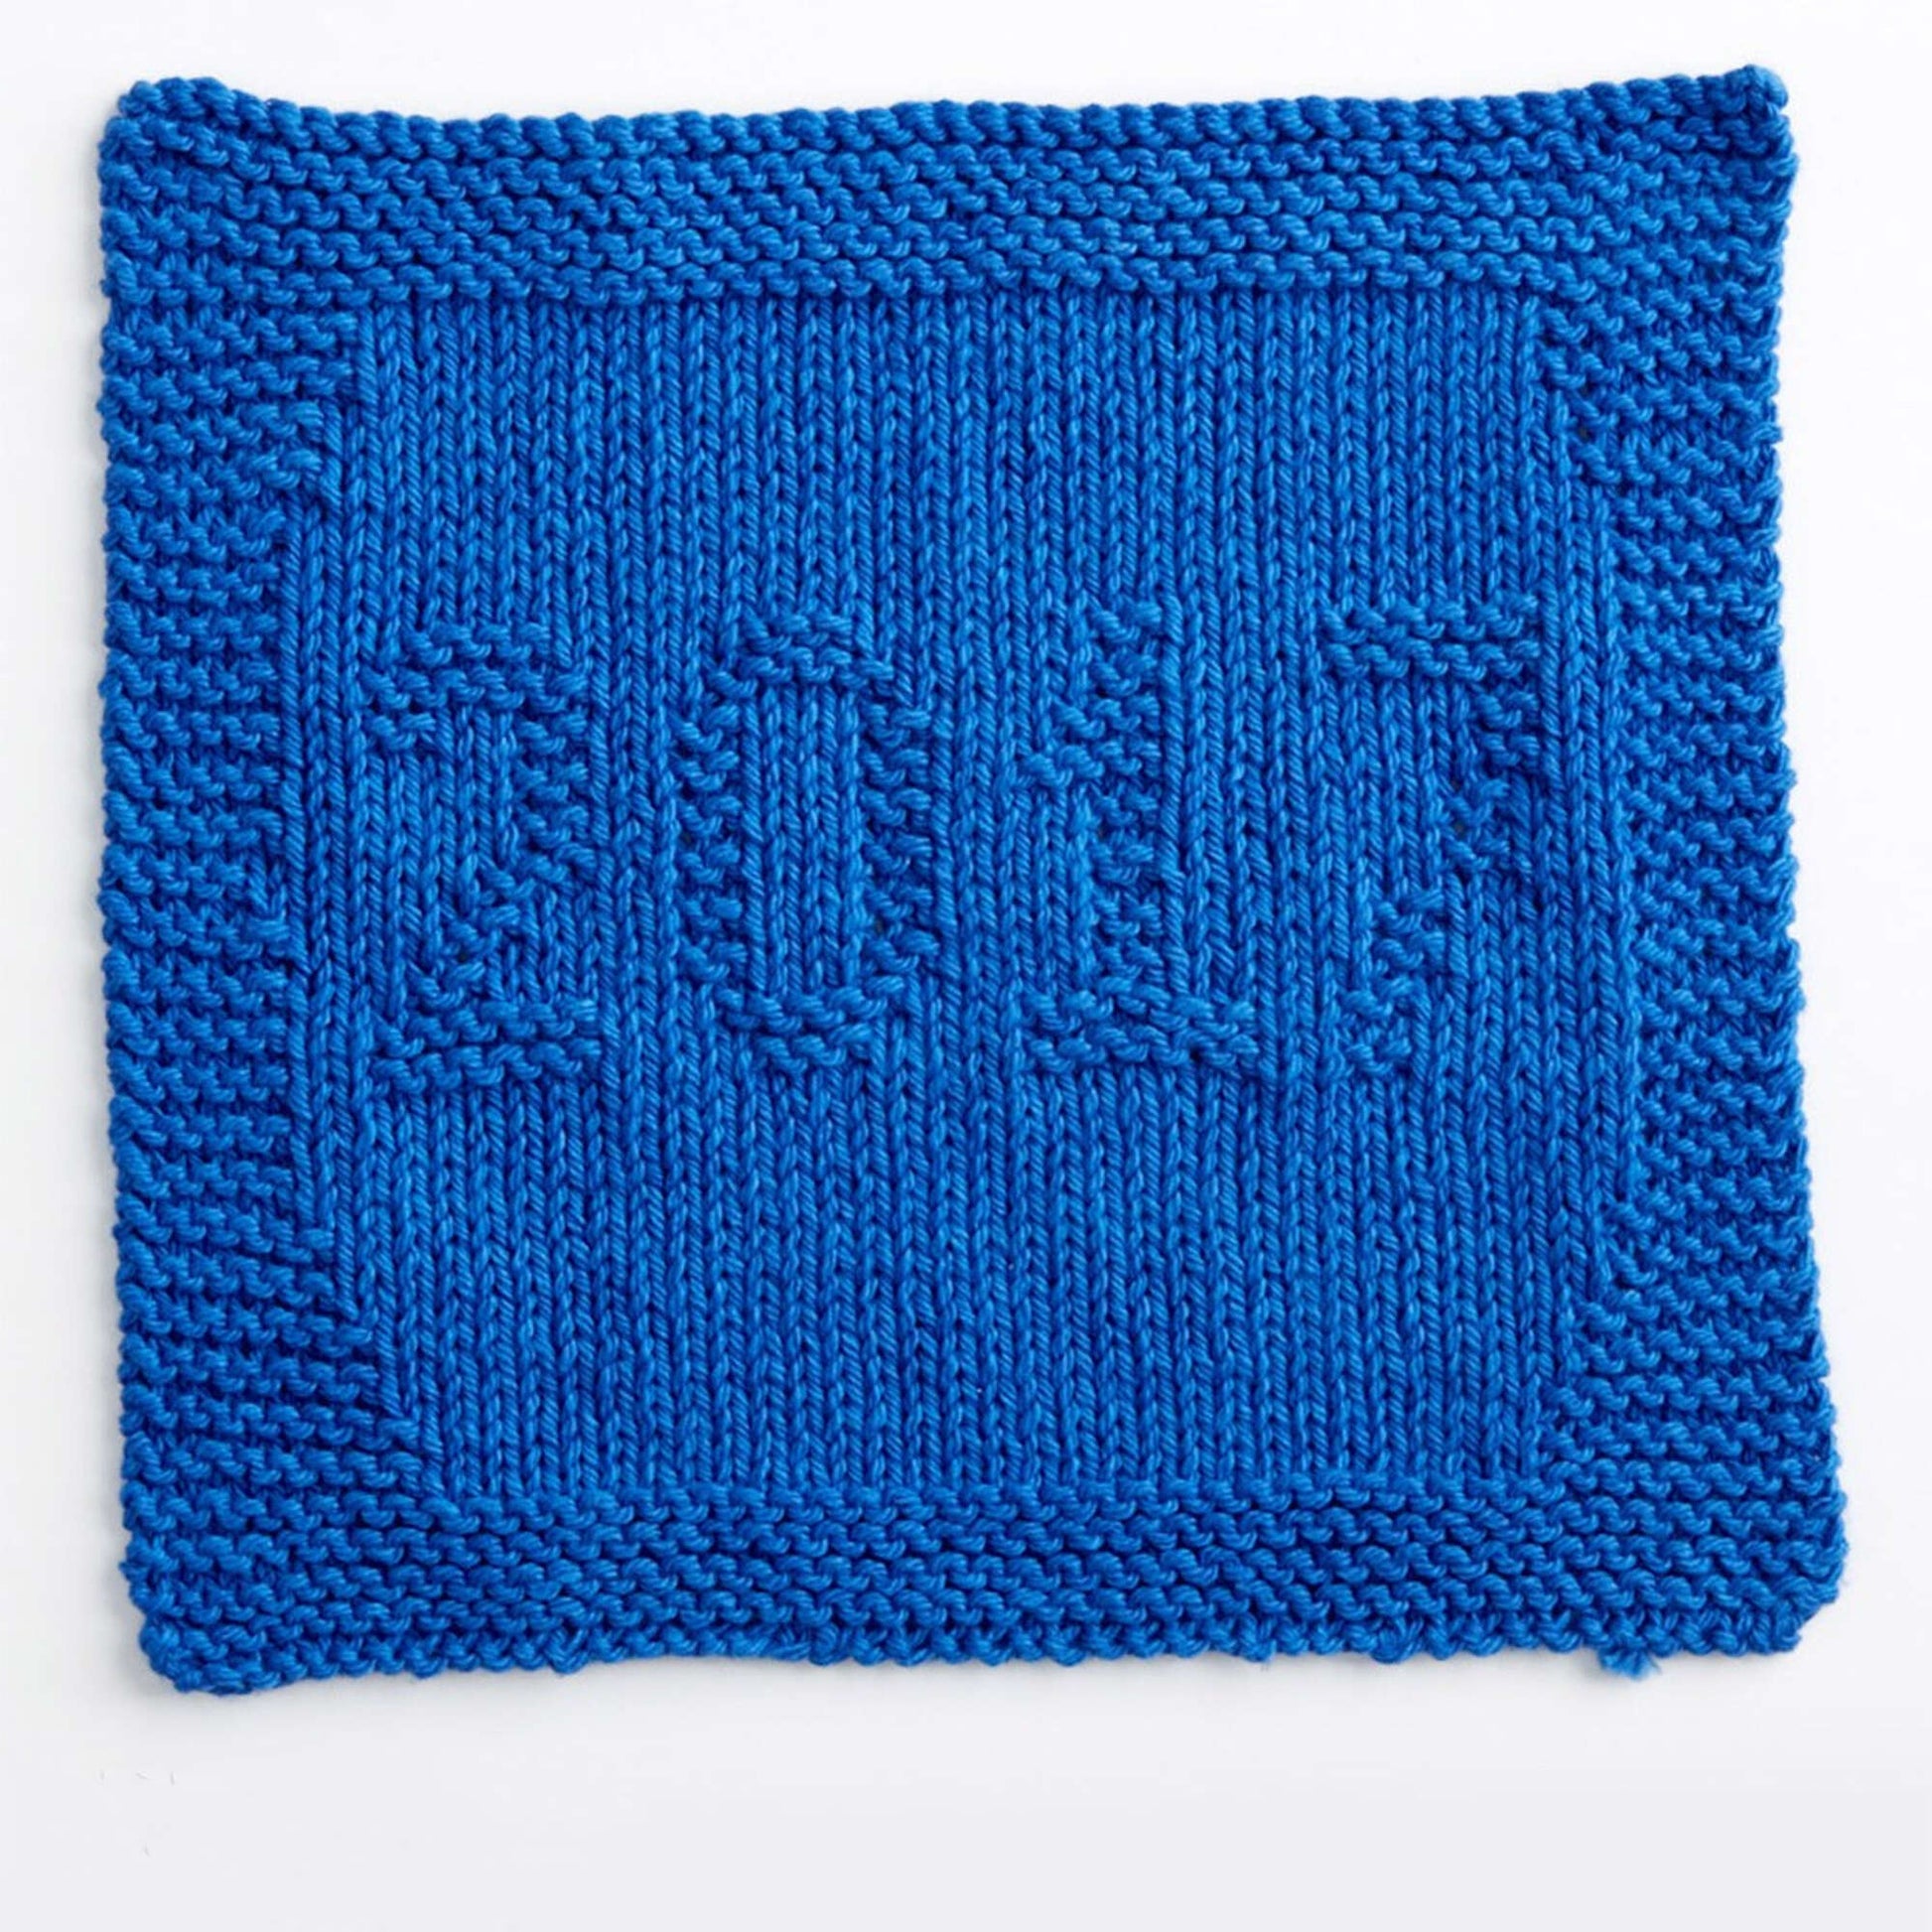 Free Lily Sugar'n Cream 2017 Knit Dishcloth Pattern